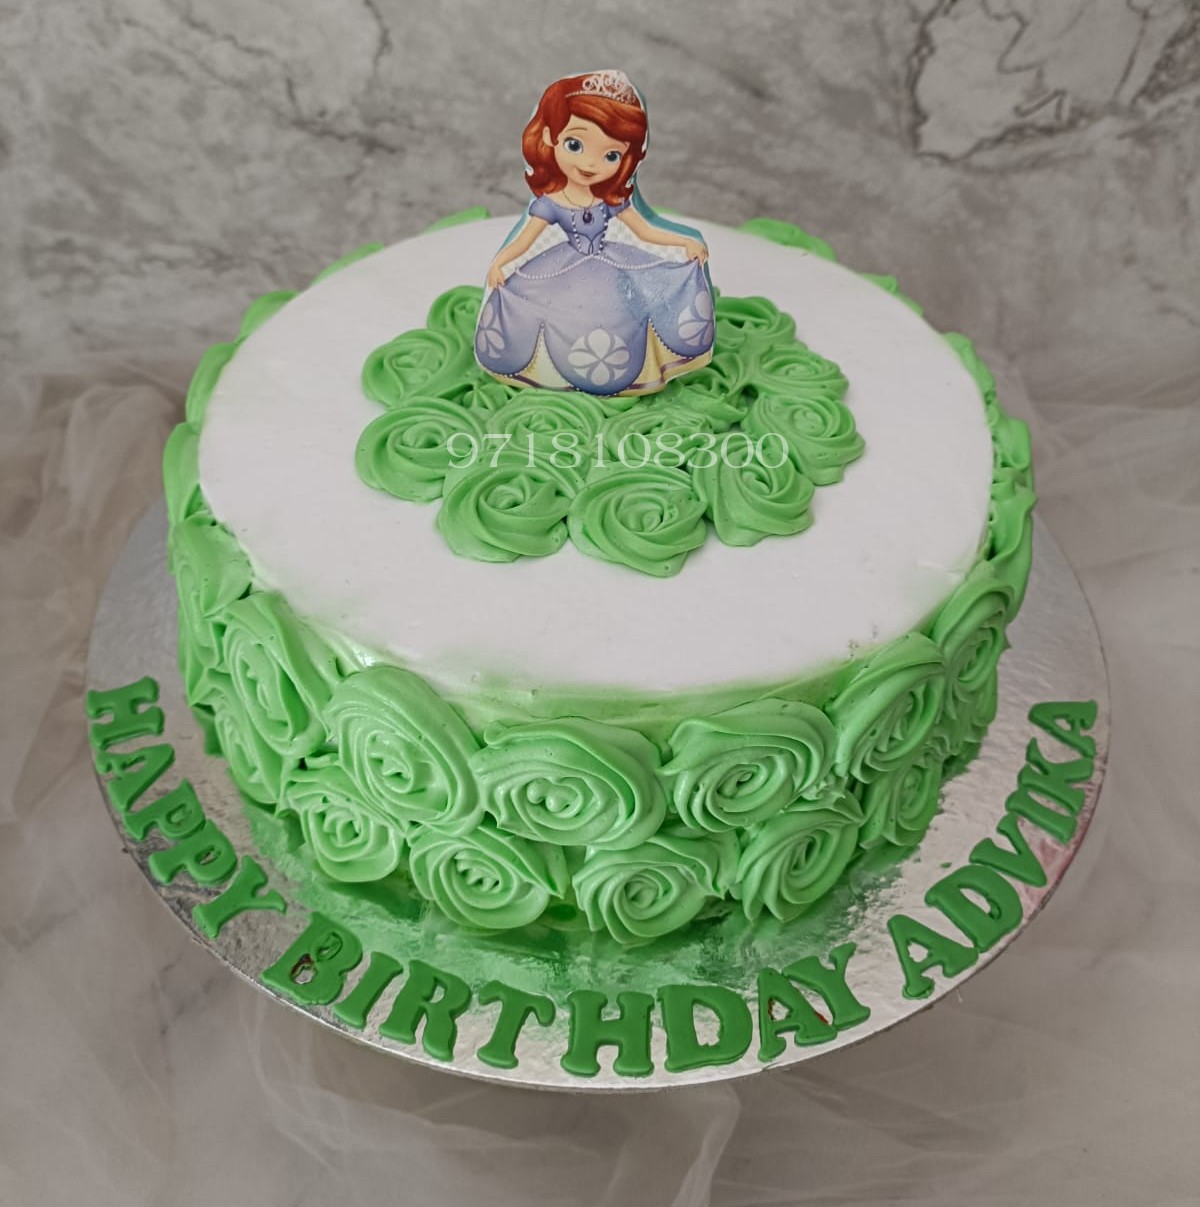 Princess Sofia Cake #2 - Decorated Cake by irisheyes - CakesDecor